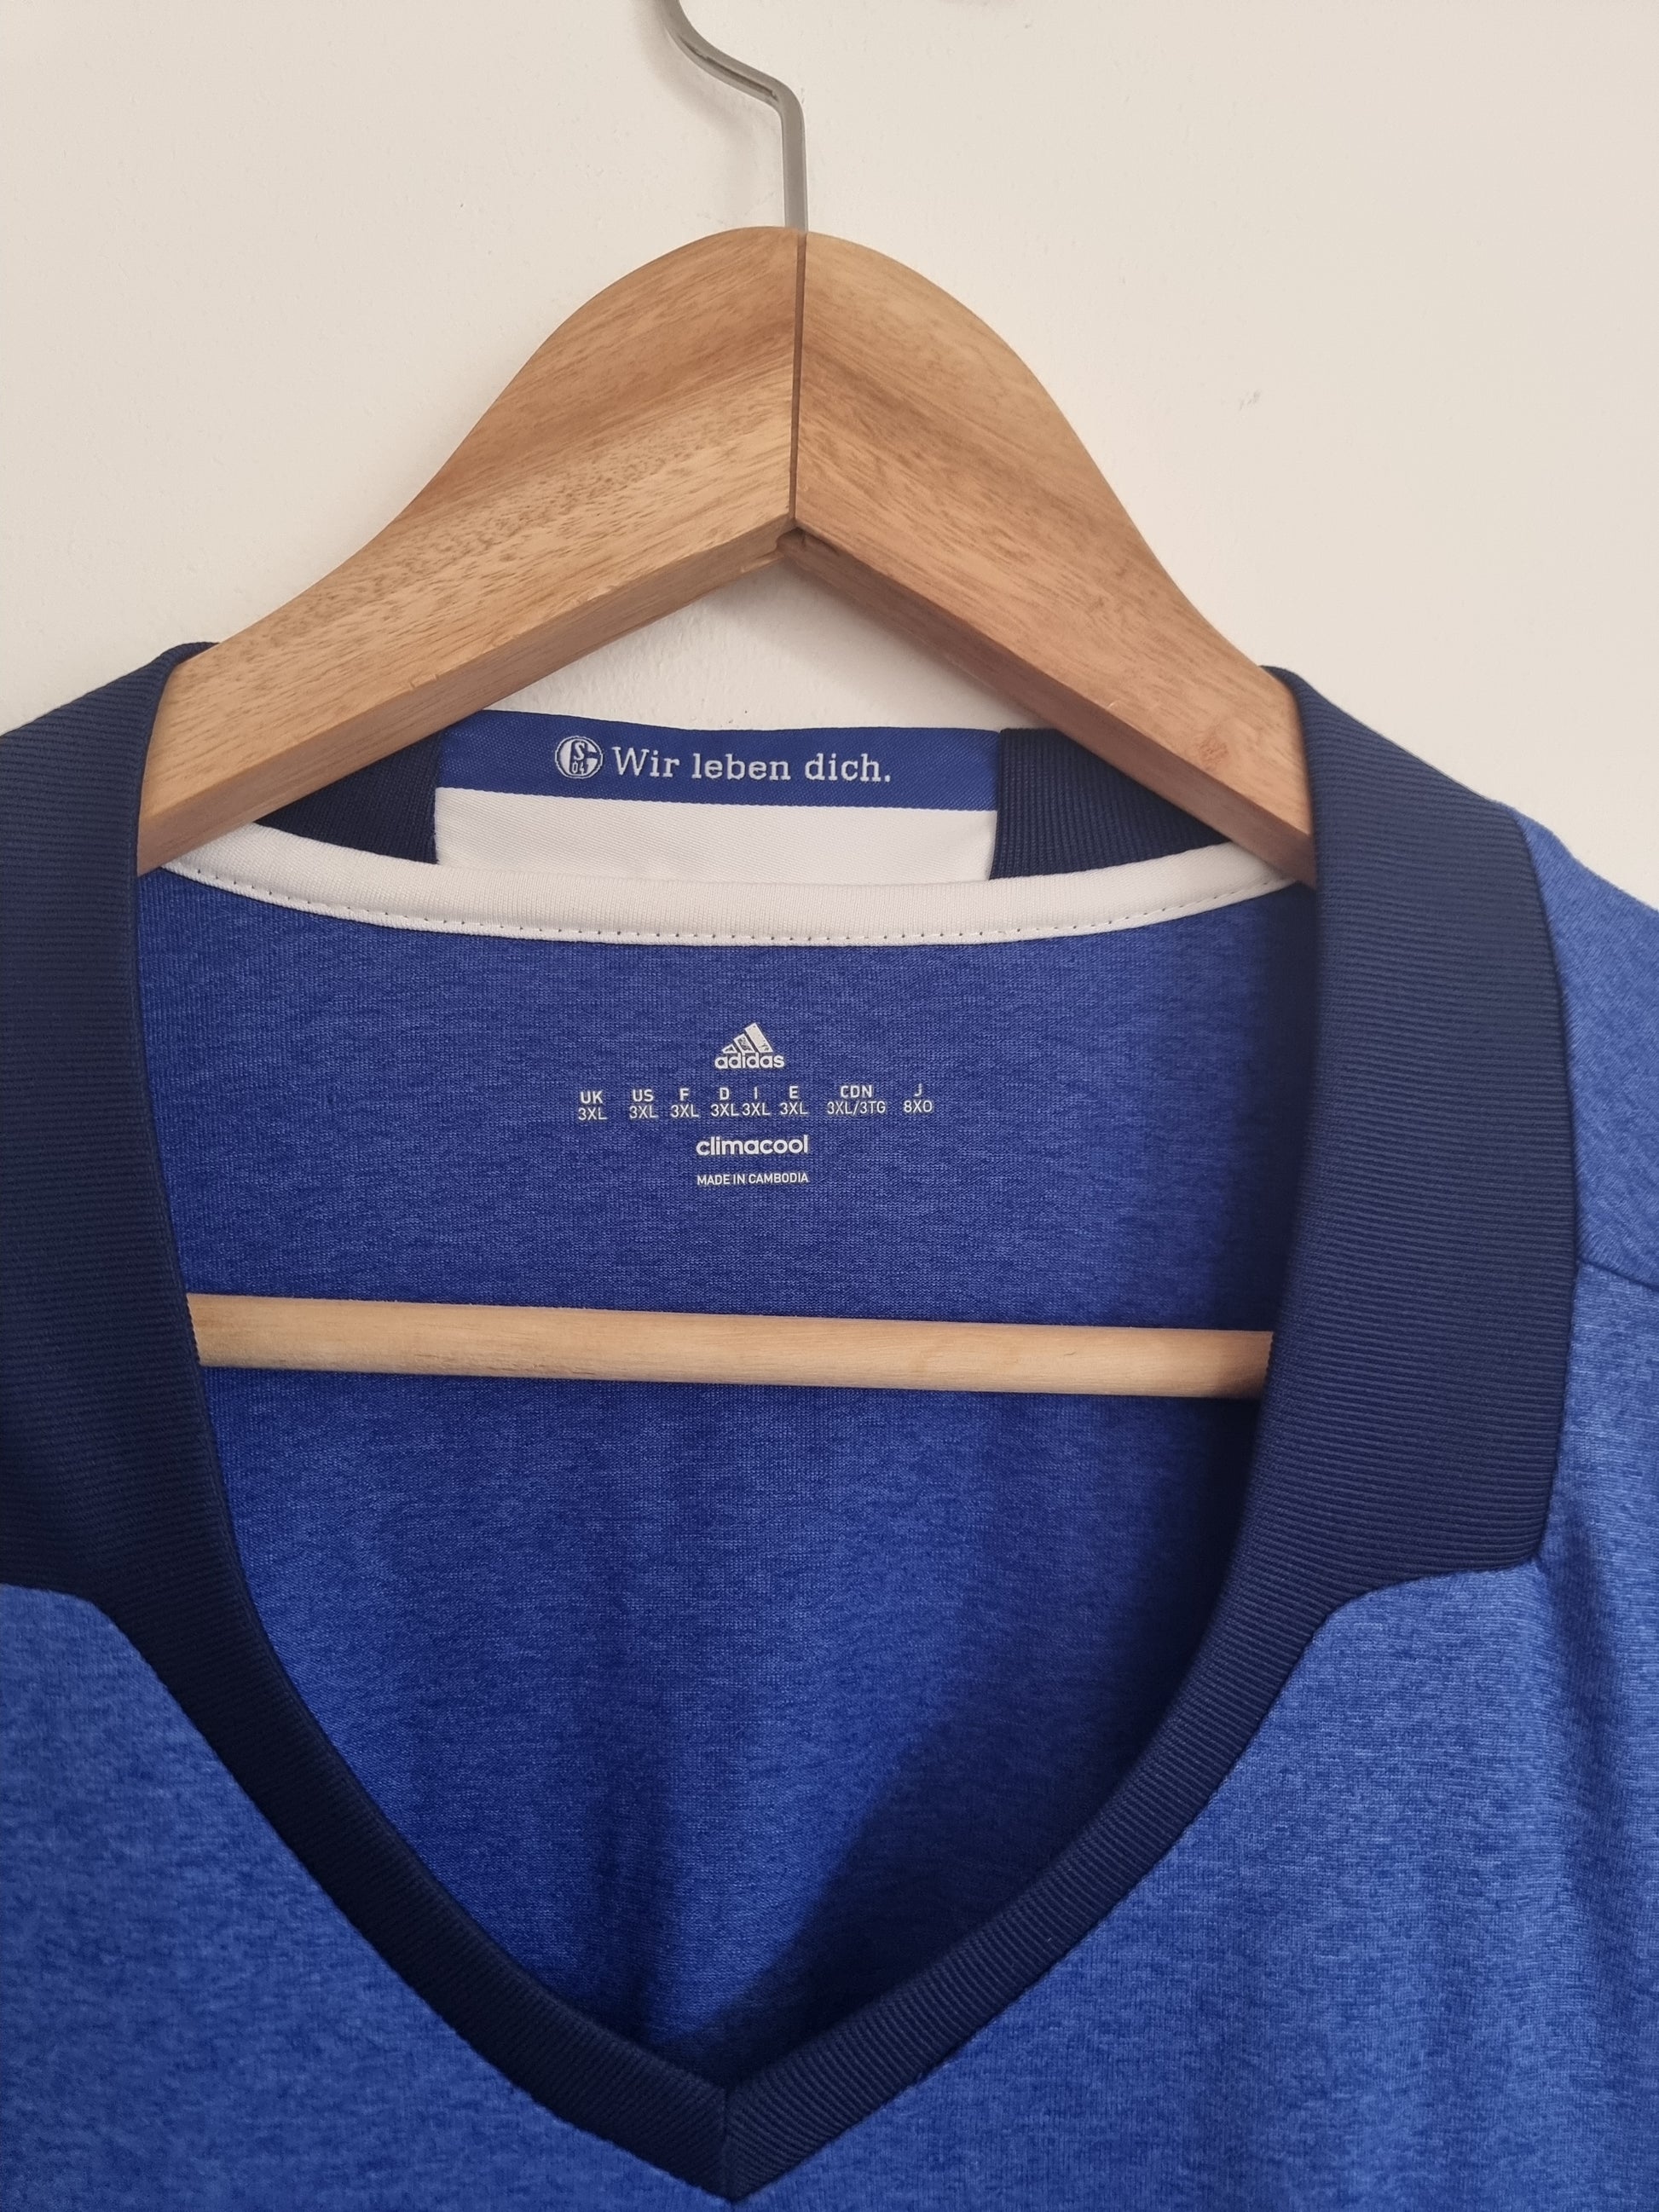 gewoontjes patroon Samenwerking Adidas Schalke 04 16/17 Home Shirt XXXL – Granny's Football Store